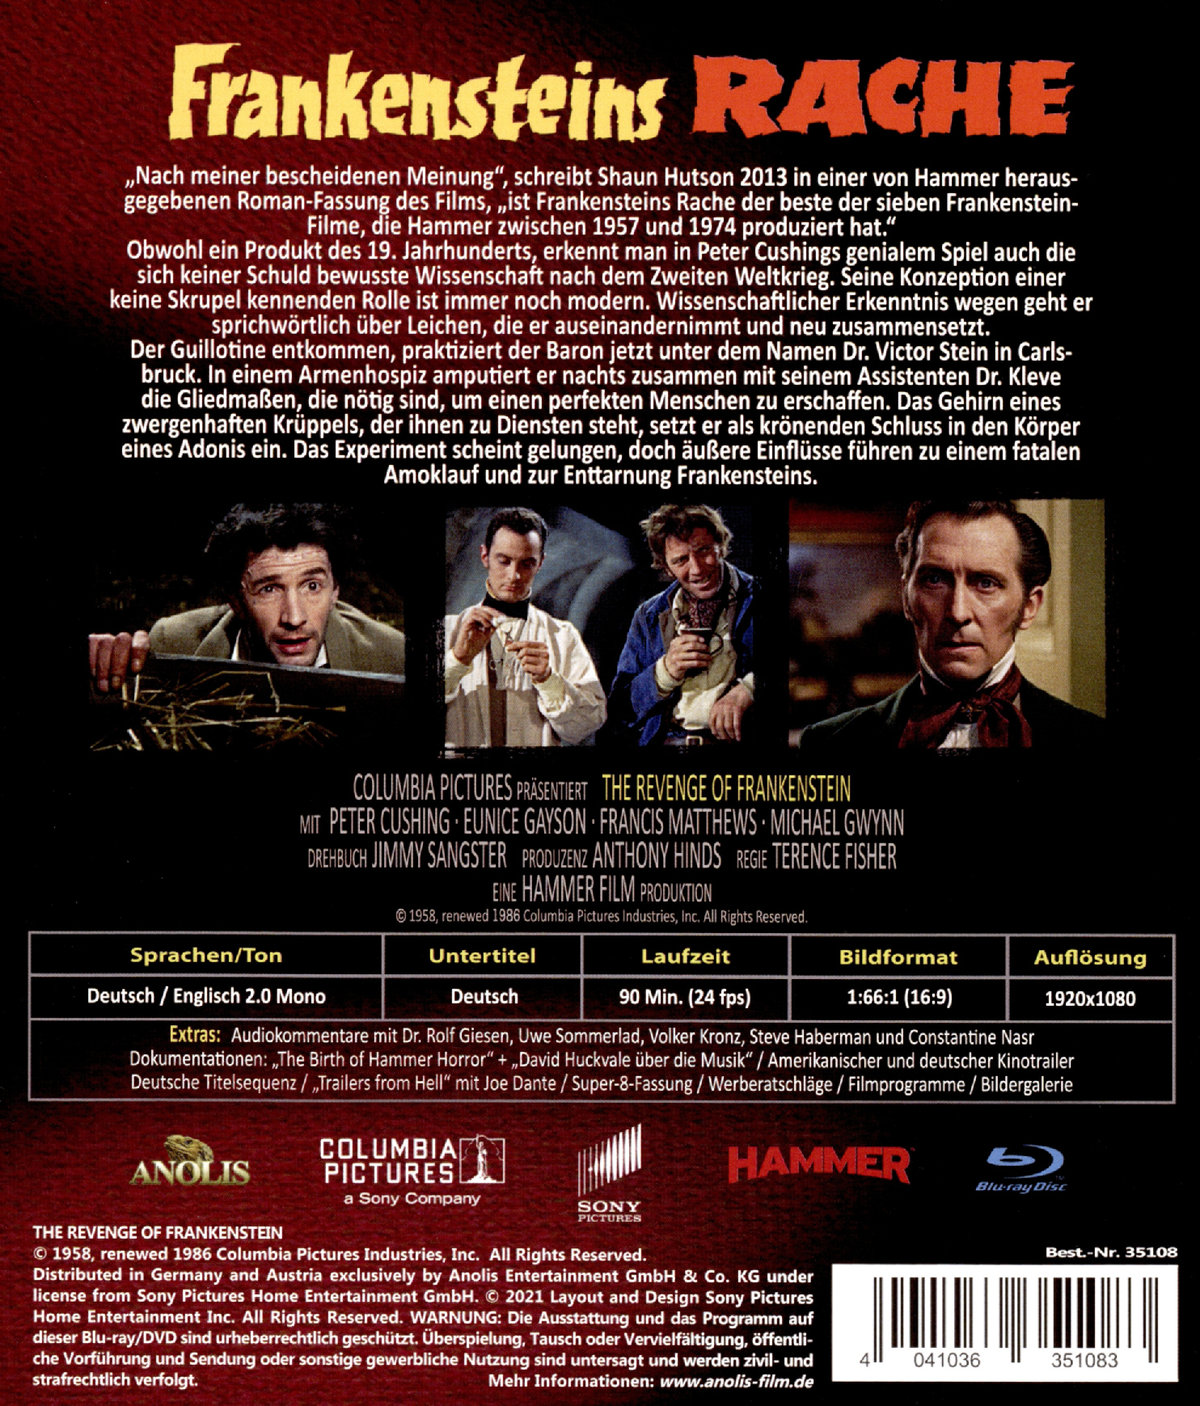 Frankensteins Rache - Limited Edition (blu-ray)